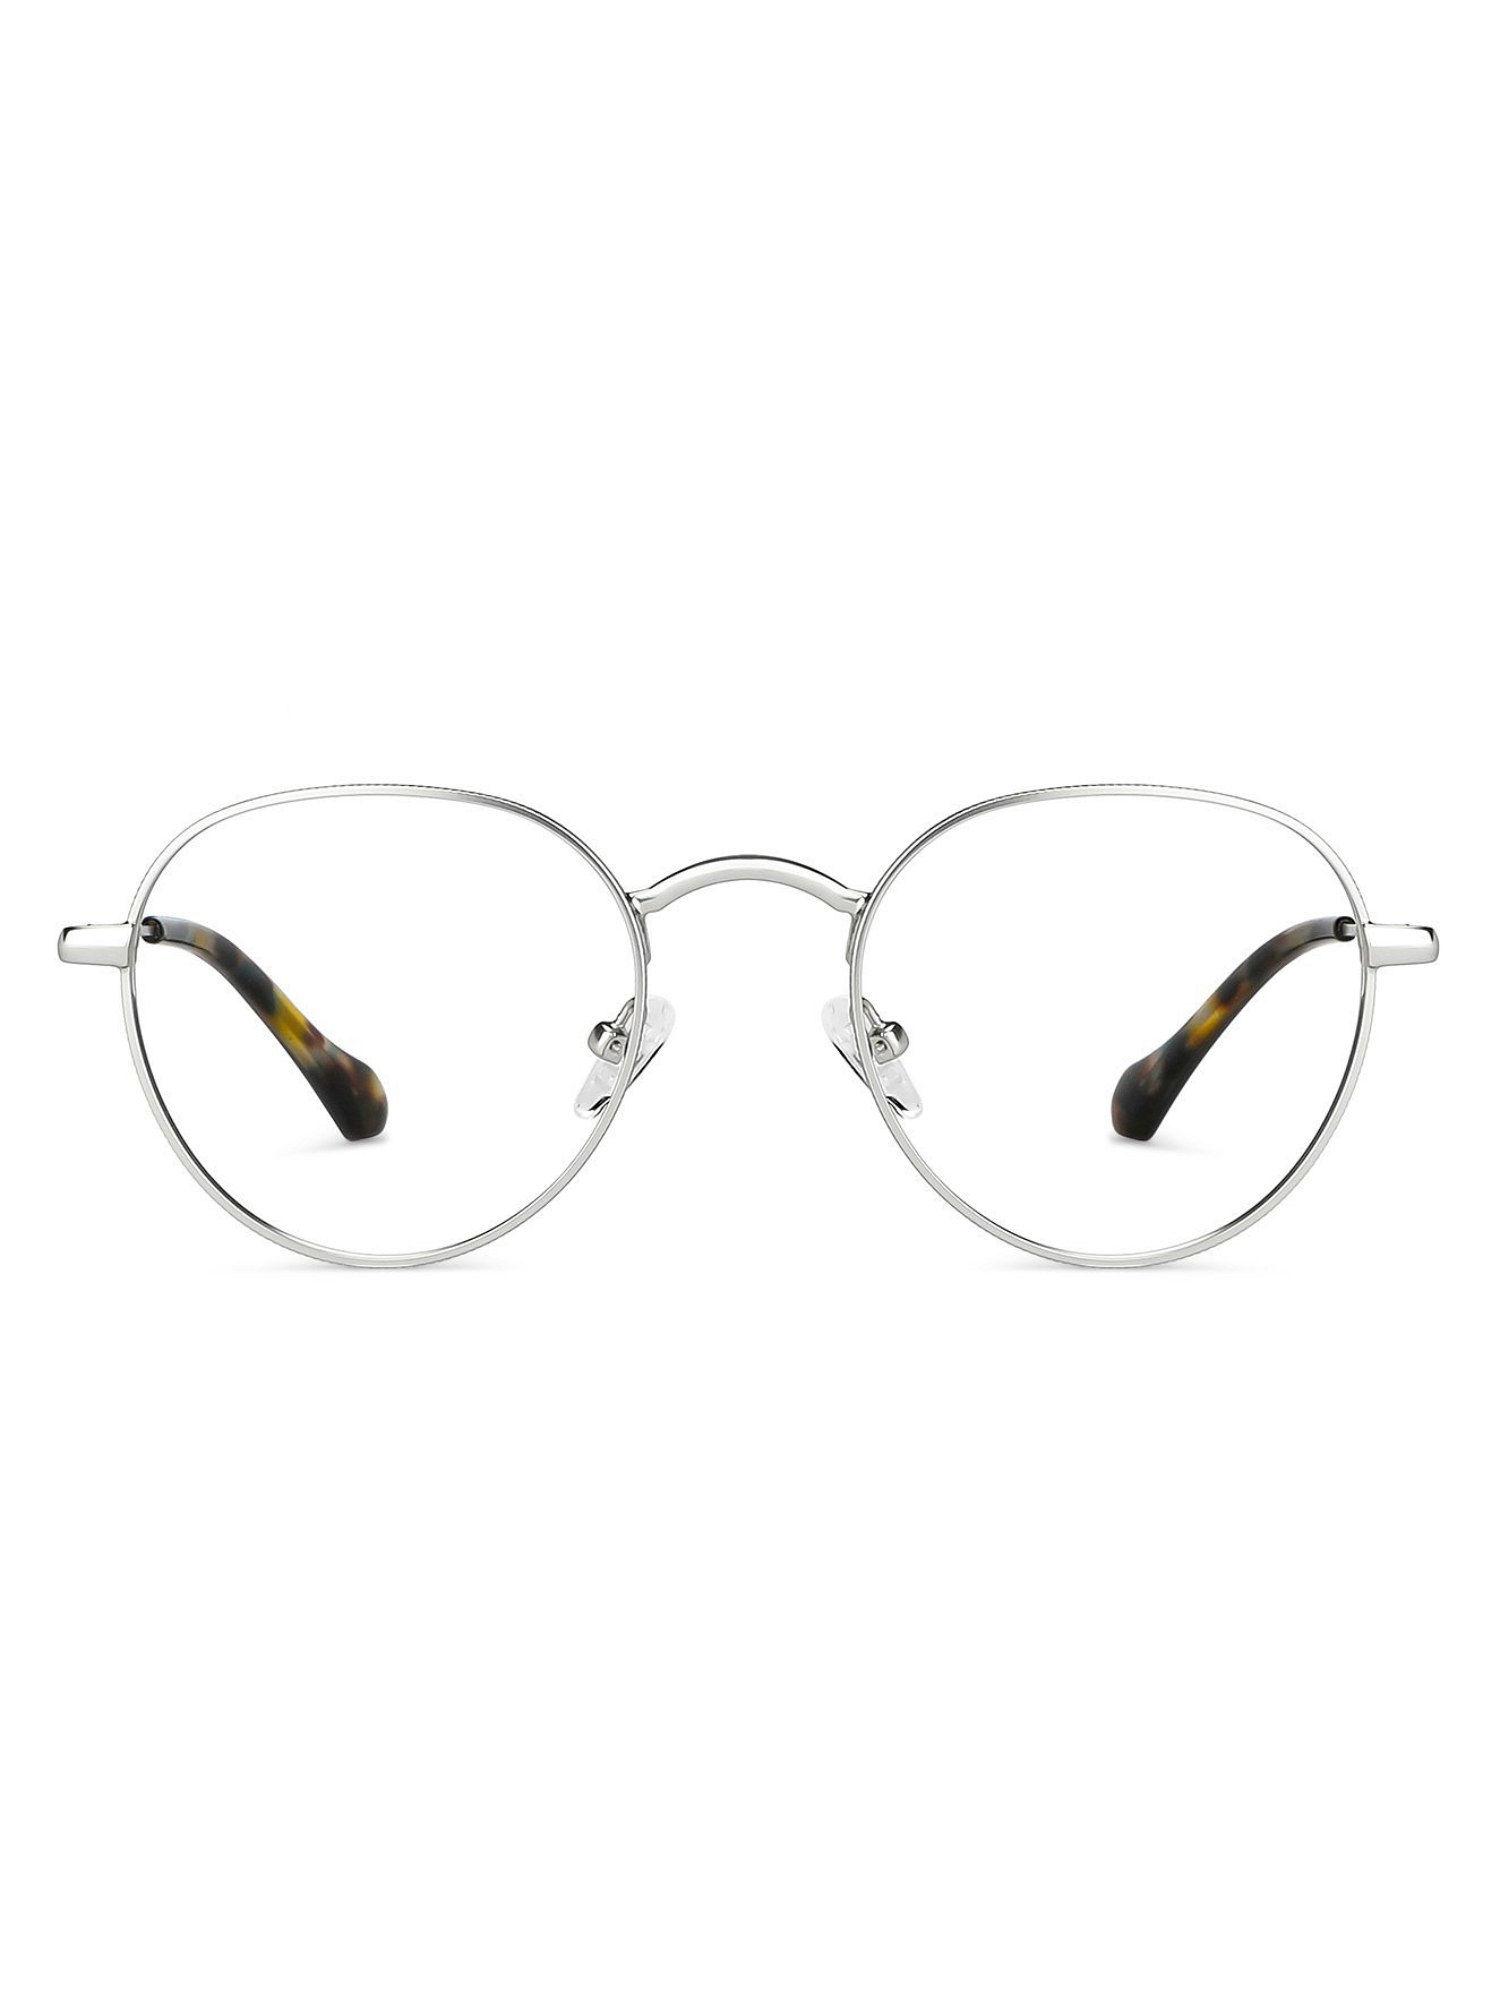 silver round computer glasses - lb e14131